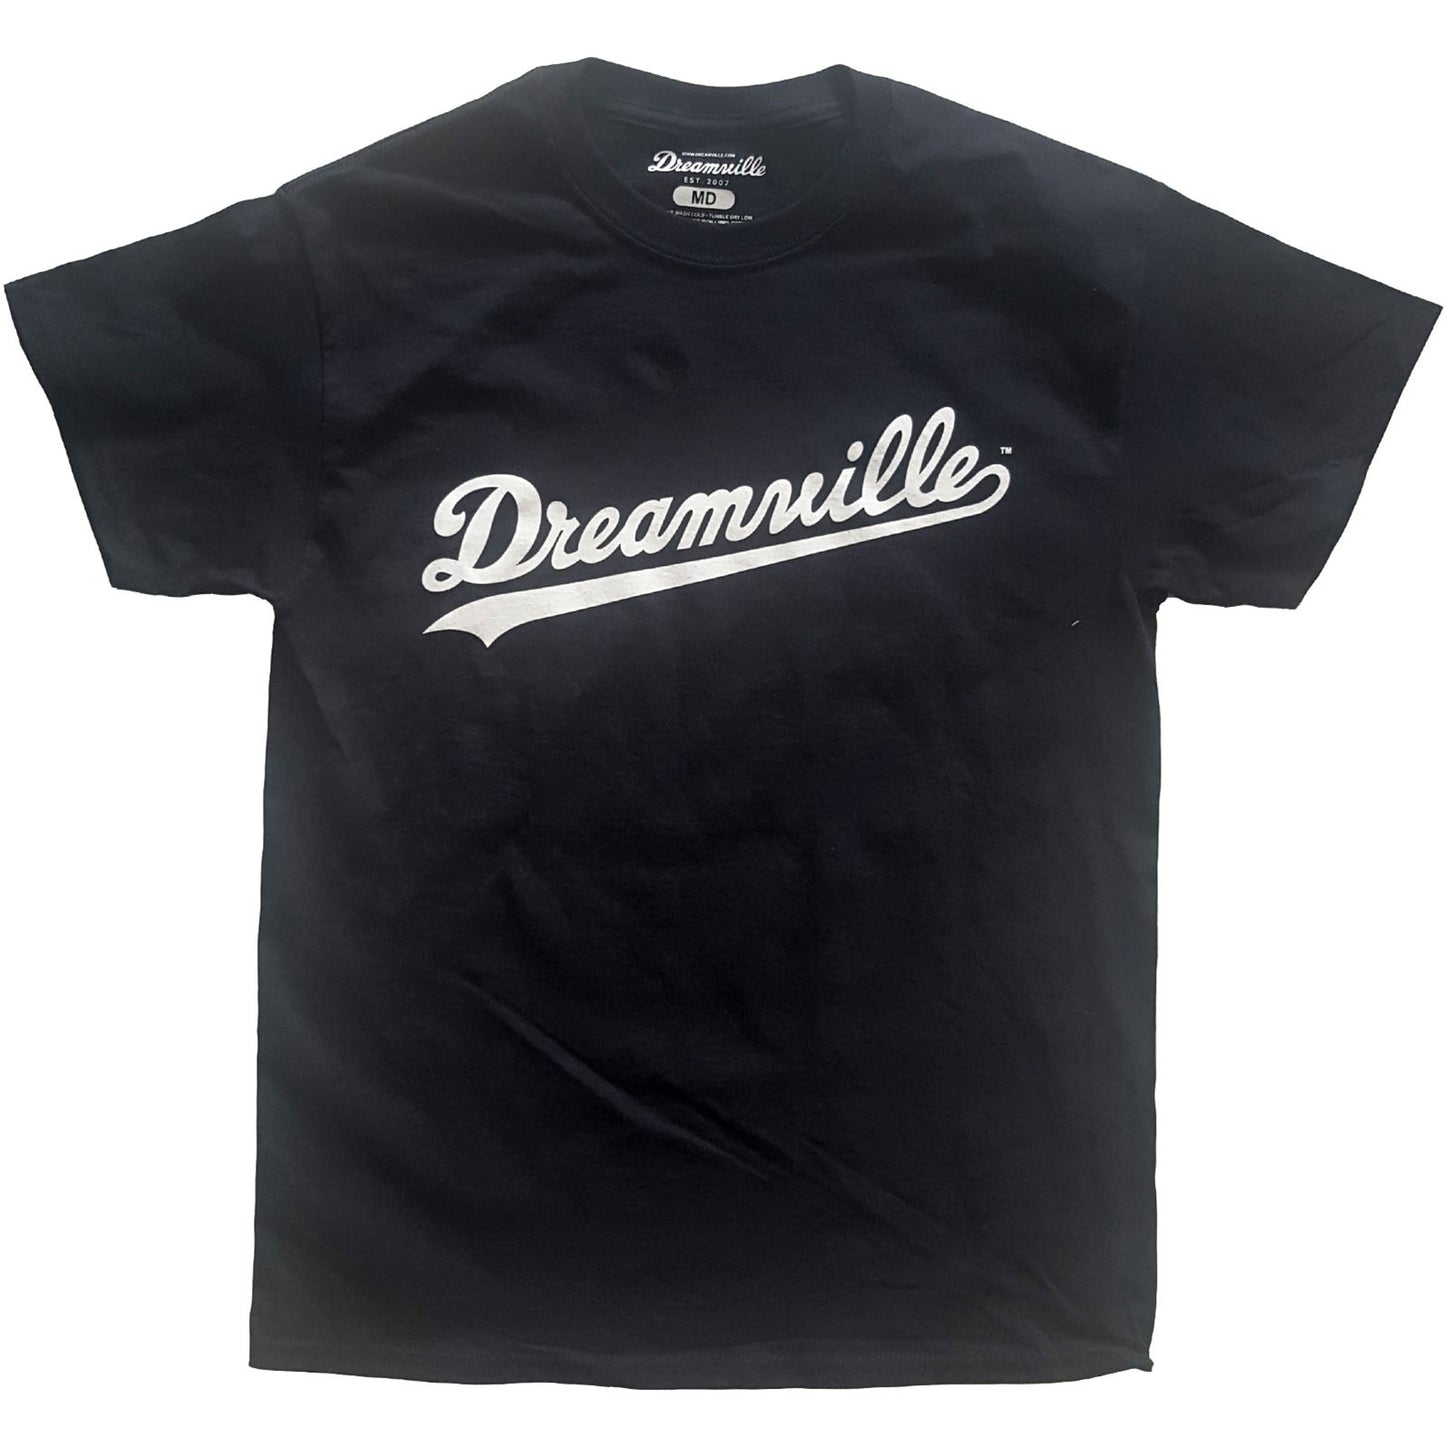 Dreamville Records T-Shirt: Script